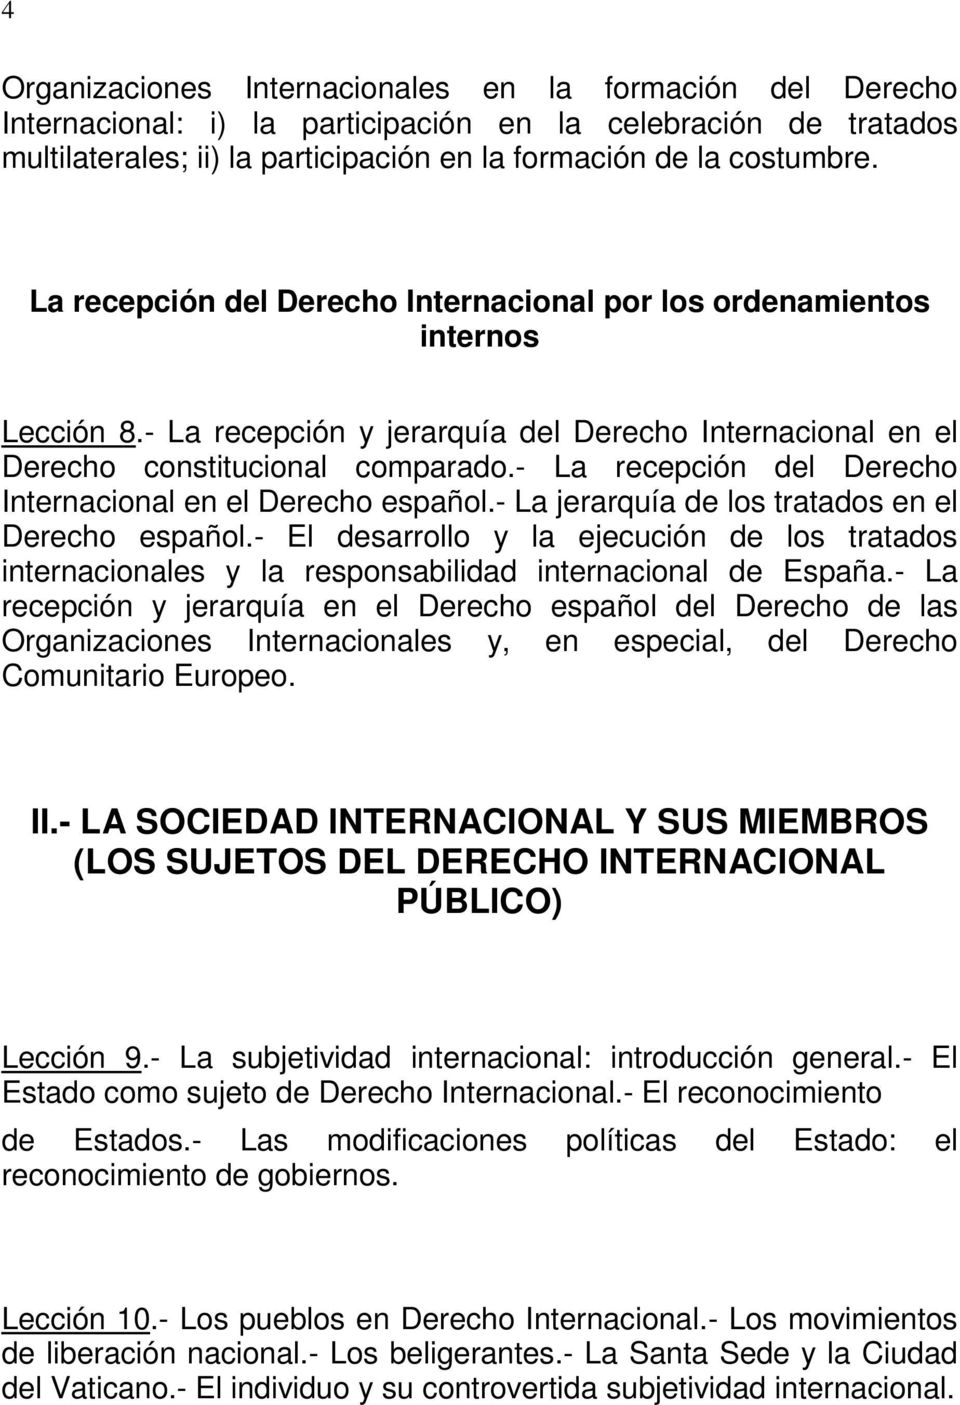 - La recepción del Derecho Internacional en el Derecho español.- La jerarquía de los tratados en el Derecho español.